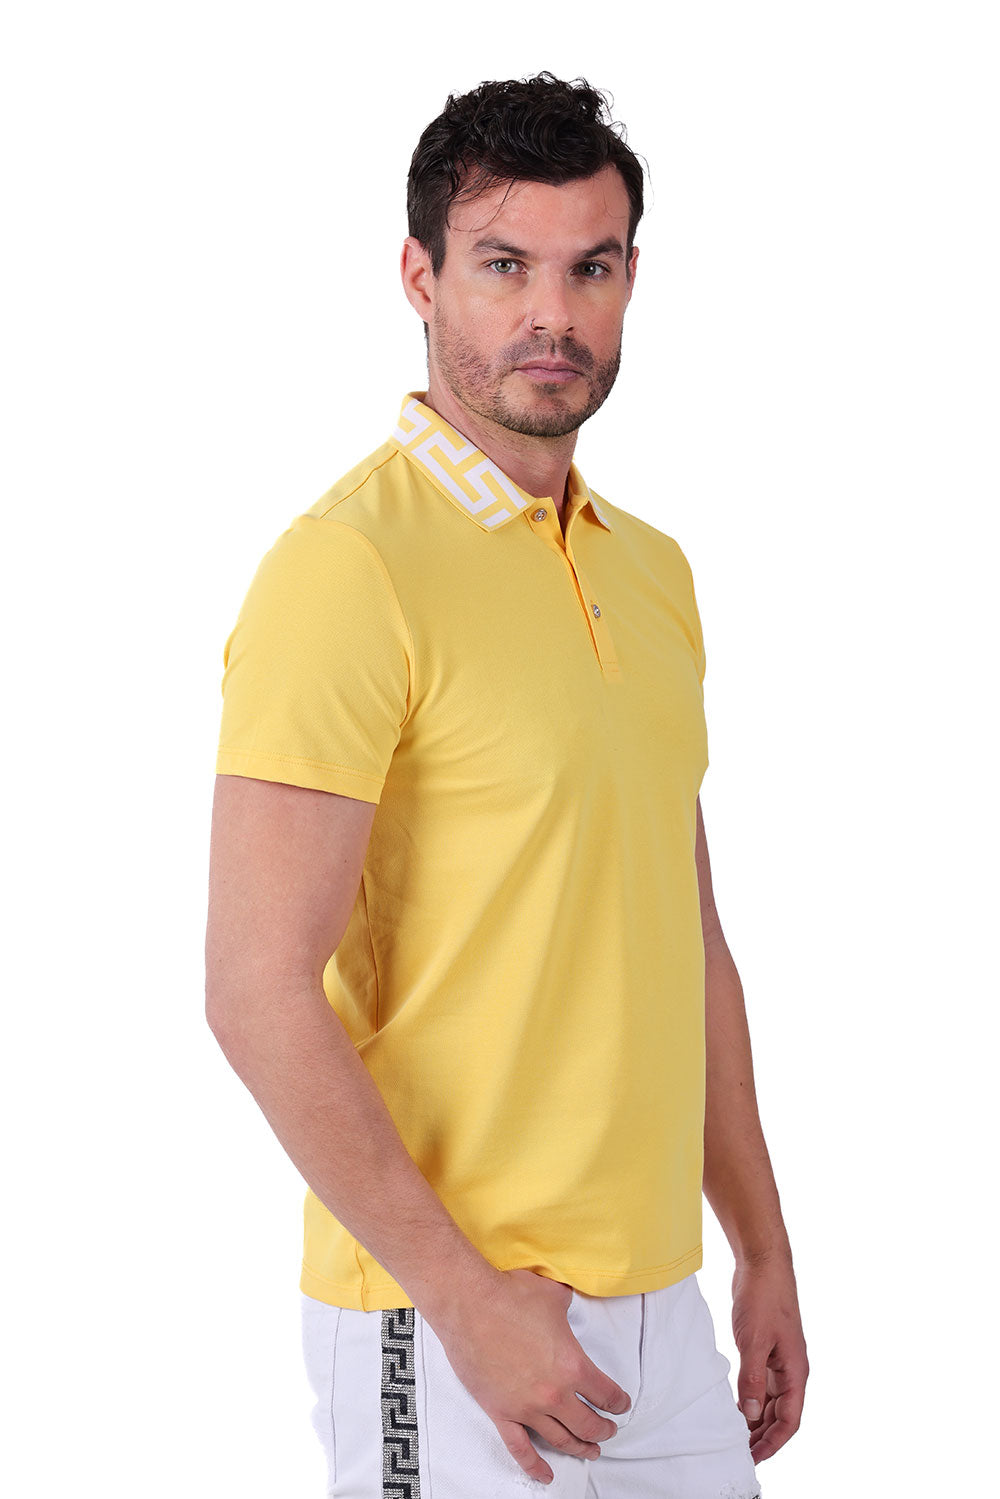 Barabas Men's Greek Key Printed Pattern Designer Polo Shirts PS121